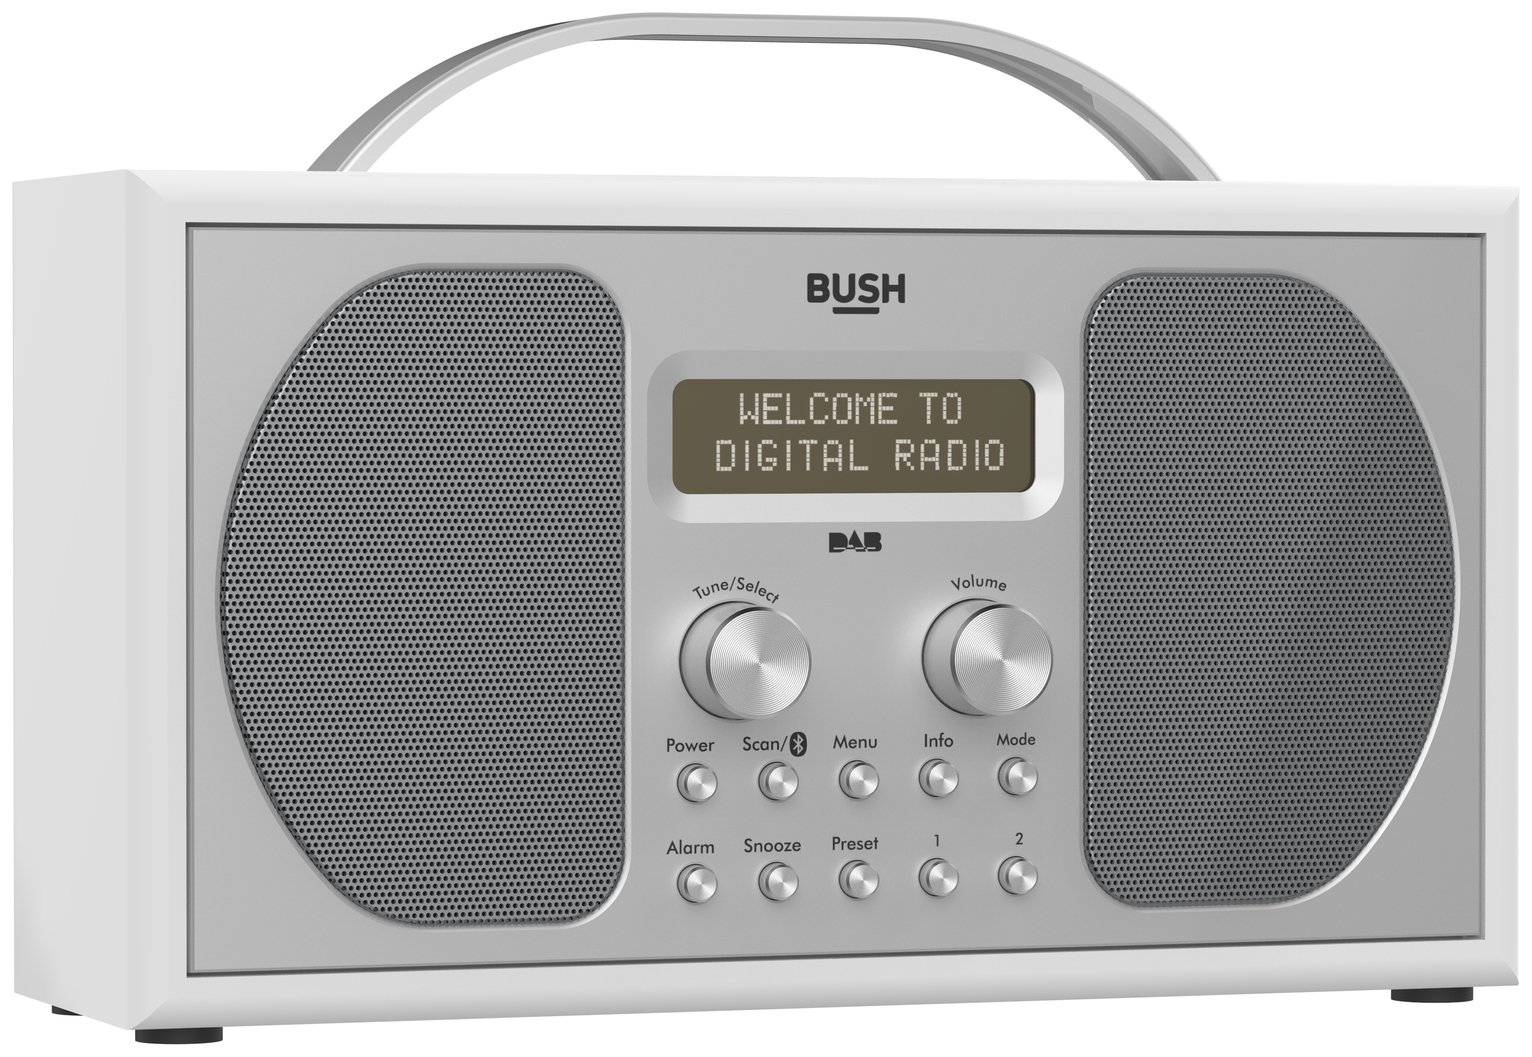 Bush Stereo DAB Radio Review